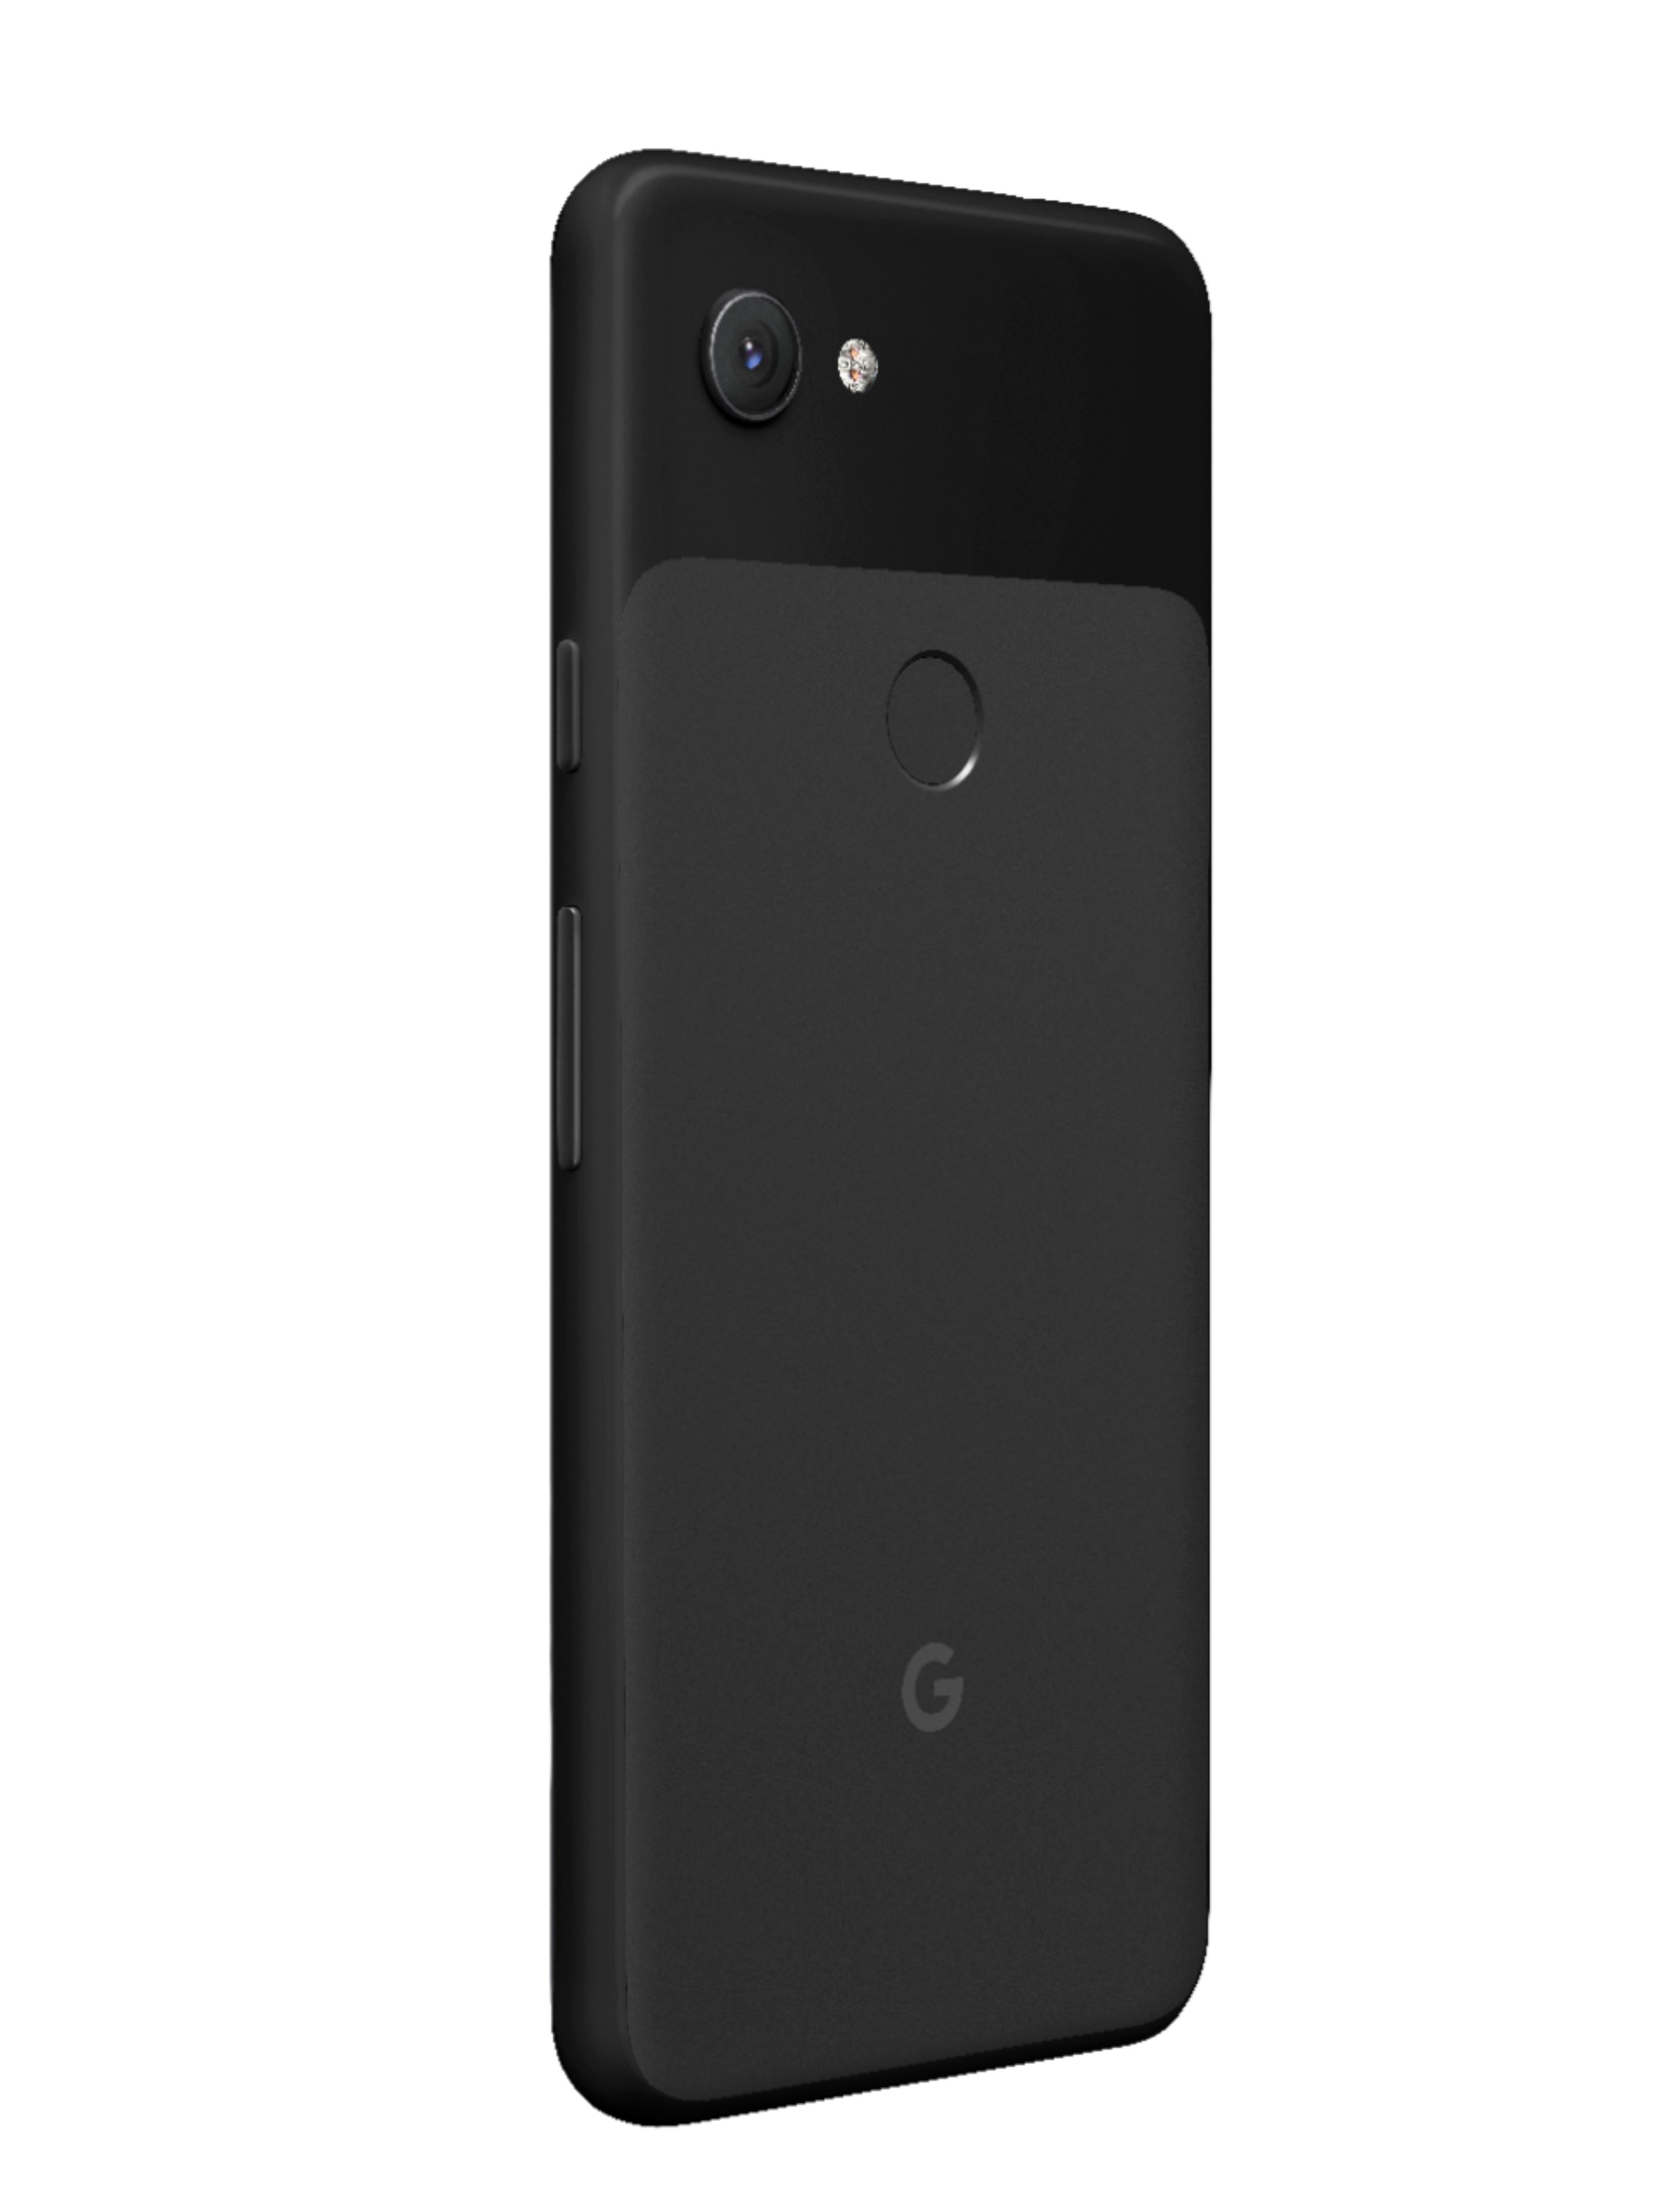 セール最新作】 Google Pixel Googl pixel 3a 64GB ブラックの通販 by ksksksks｜グーグルピクセルならラクマ 